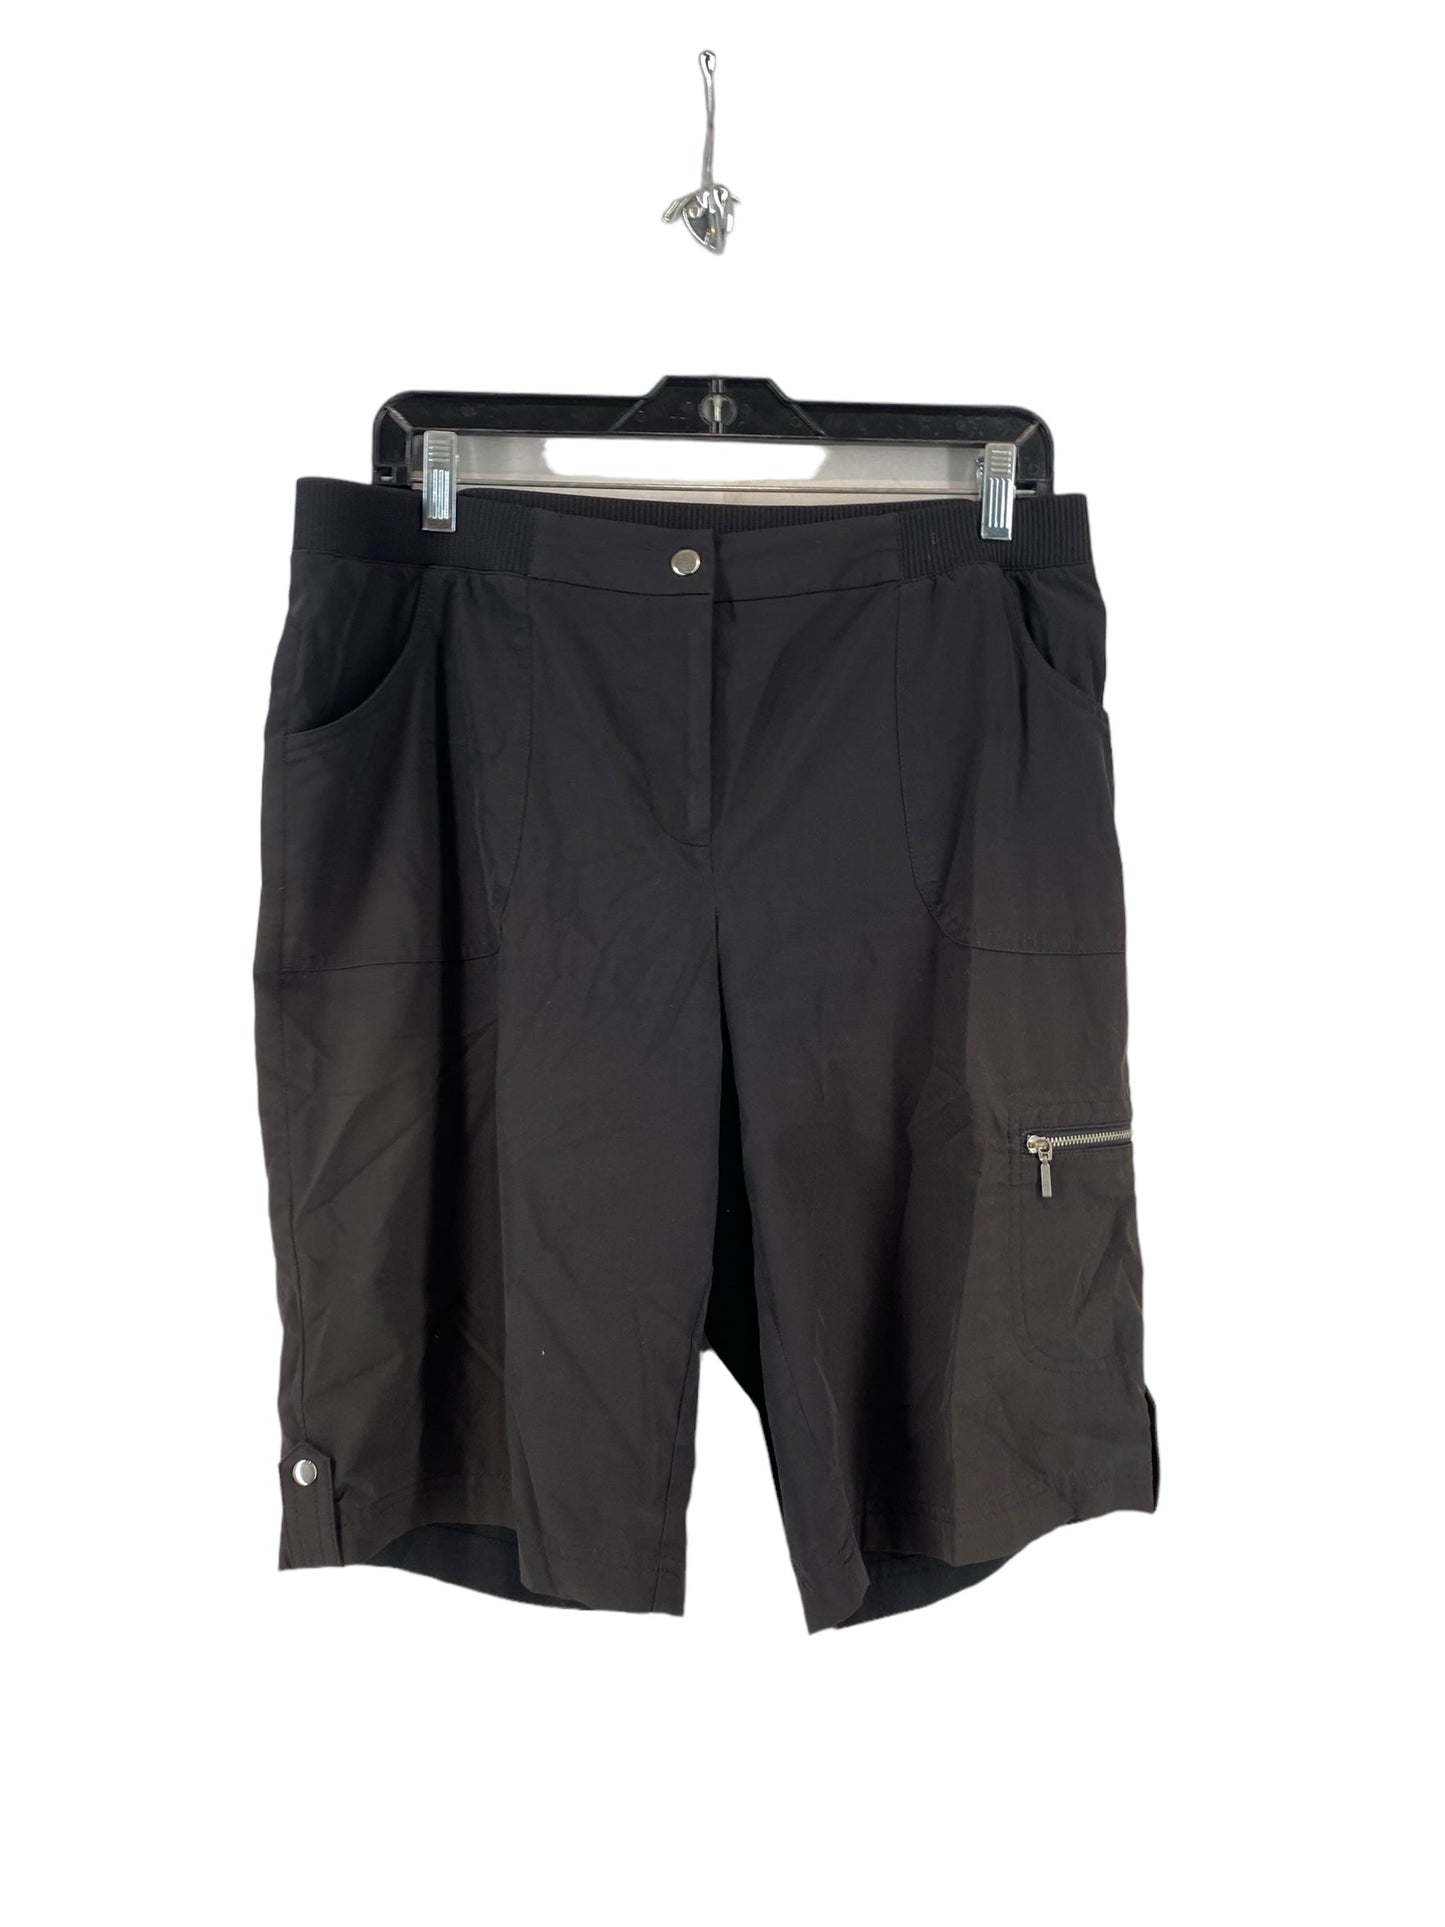 Black Shorts Zenergy By Chicos, Size 1